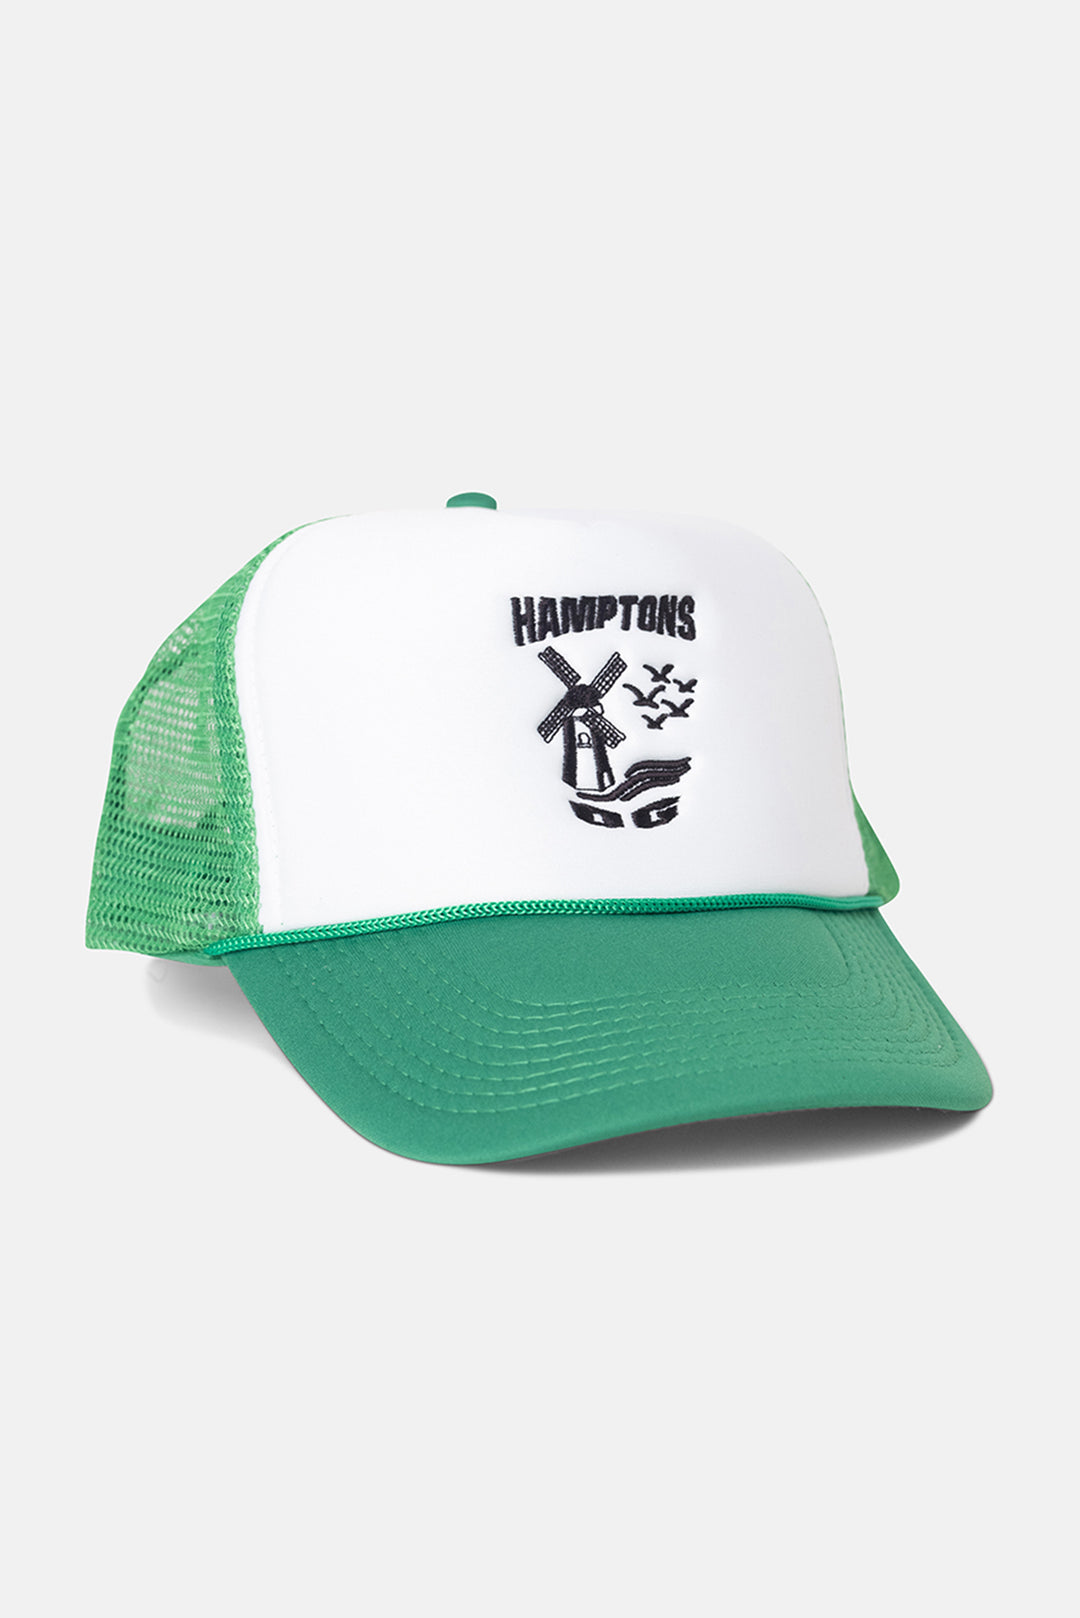 Hamptons OG Trucker Hat White/Green